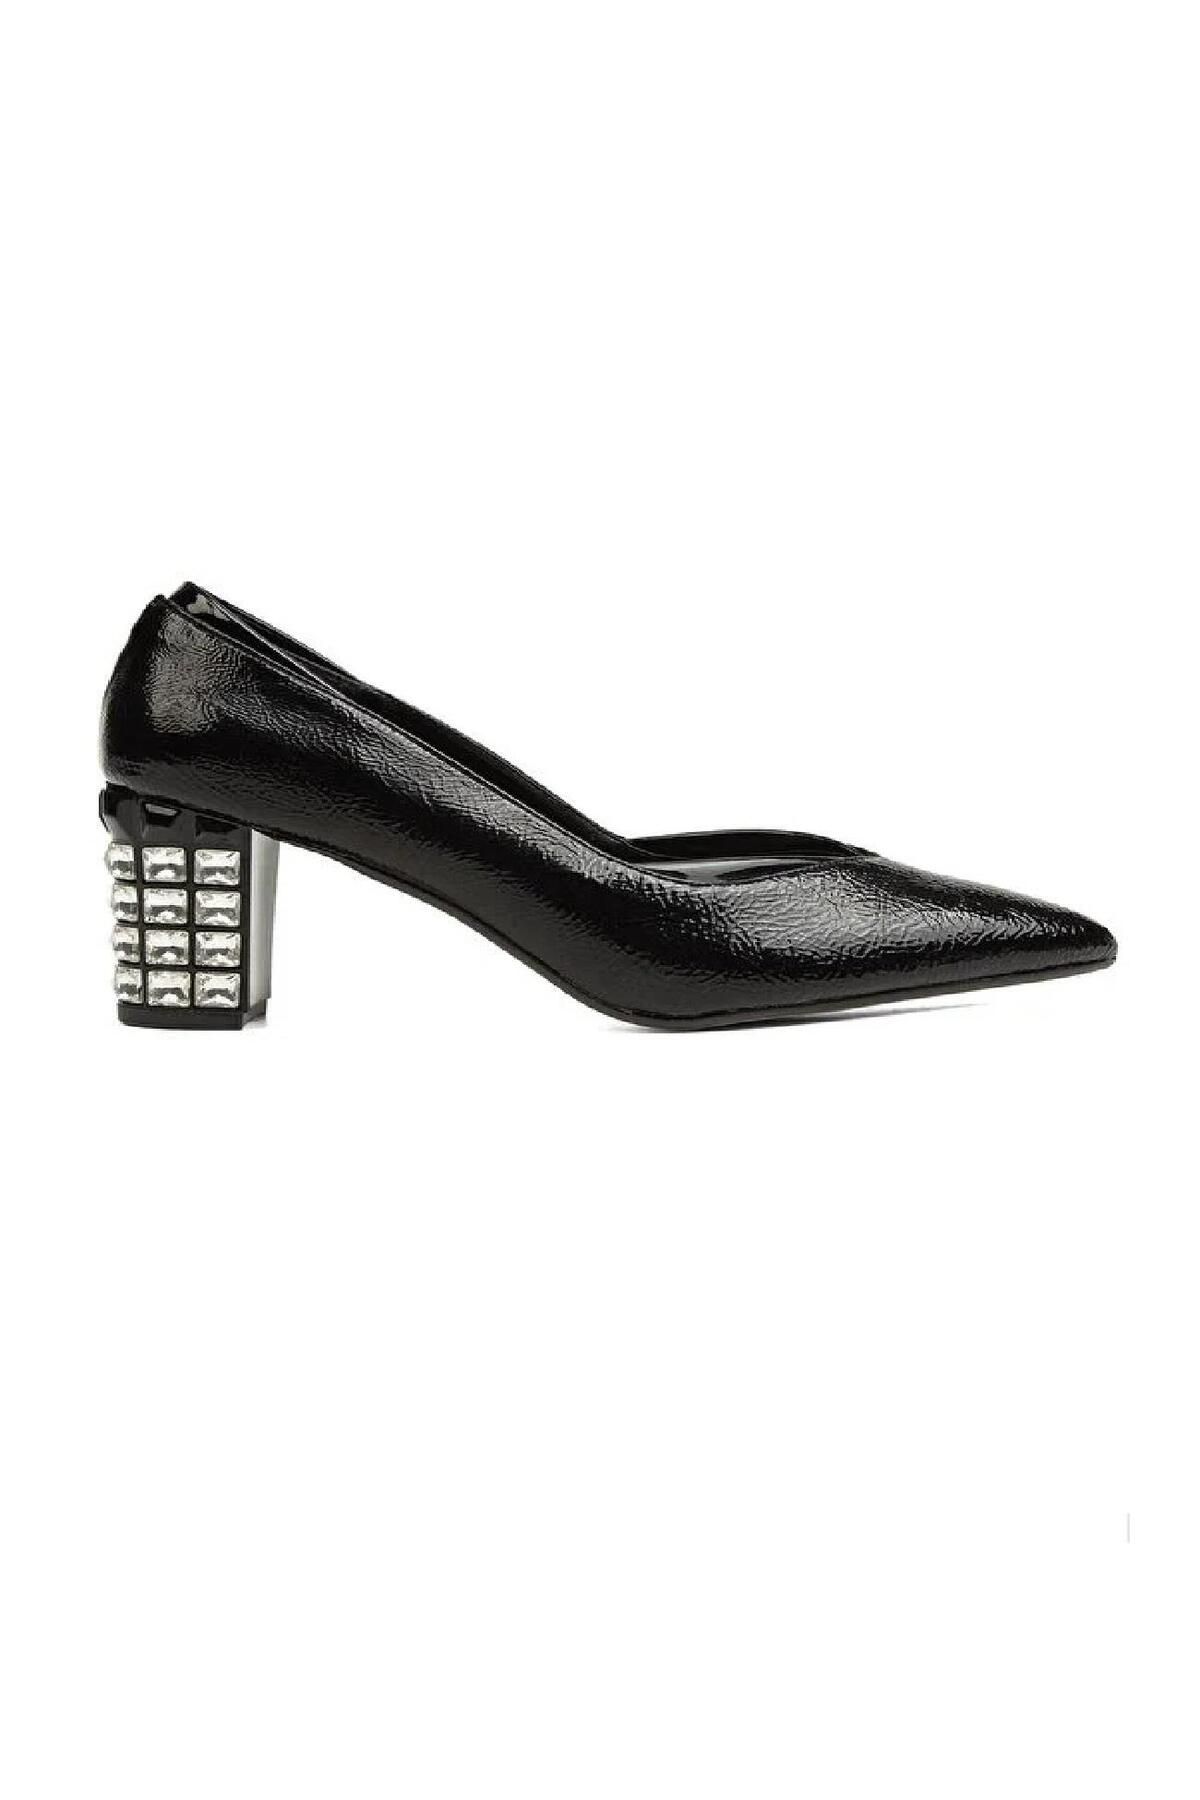 Pierre Cardin PC-52229 Siyah Kadın Topuklu Ayakkabı